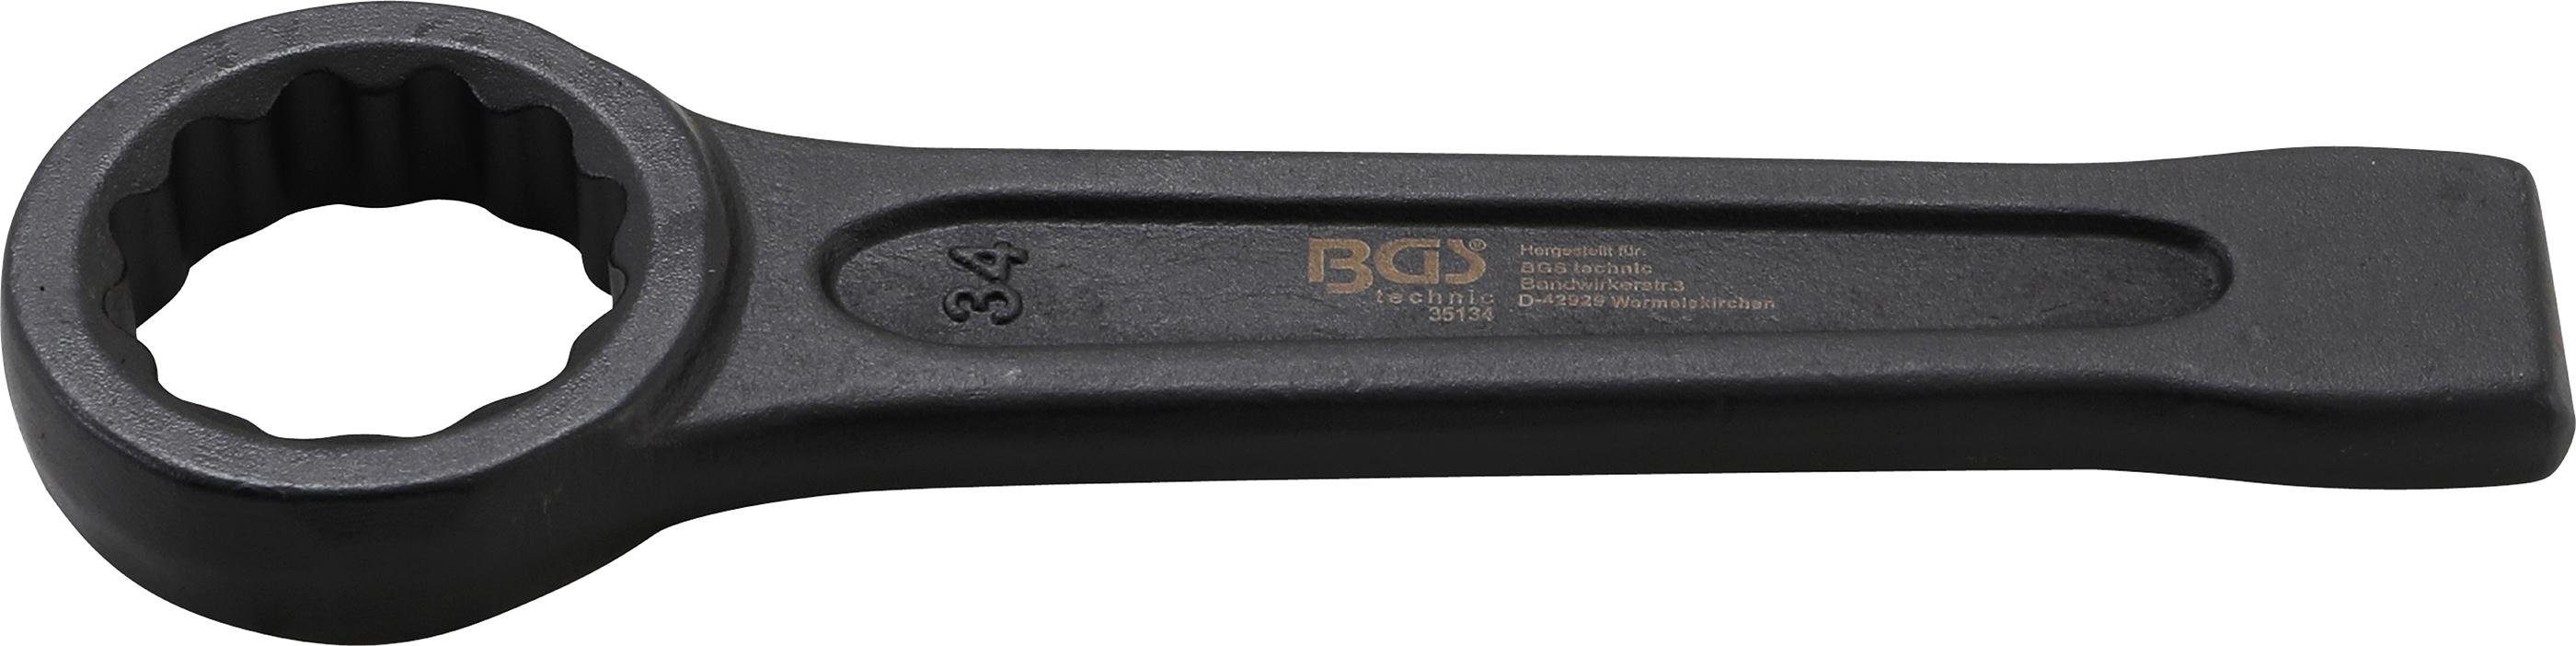 BGS technic Ringschlüssel Schlag-Ringschlüssel, SW 34 mm